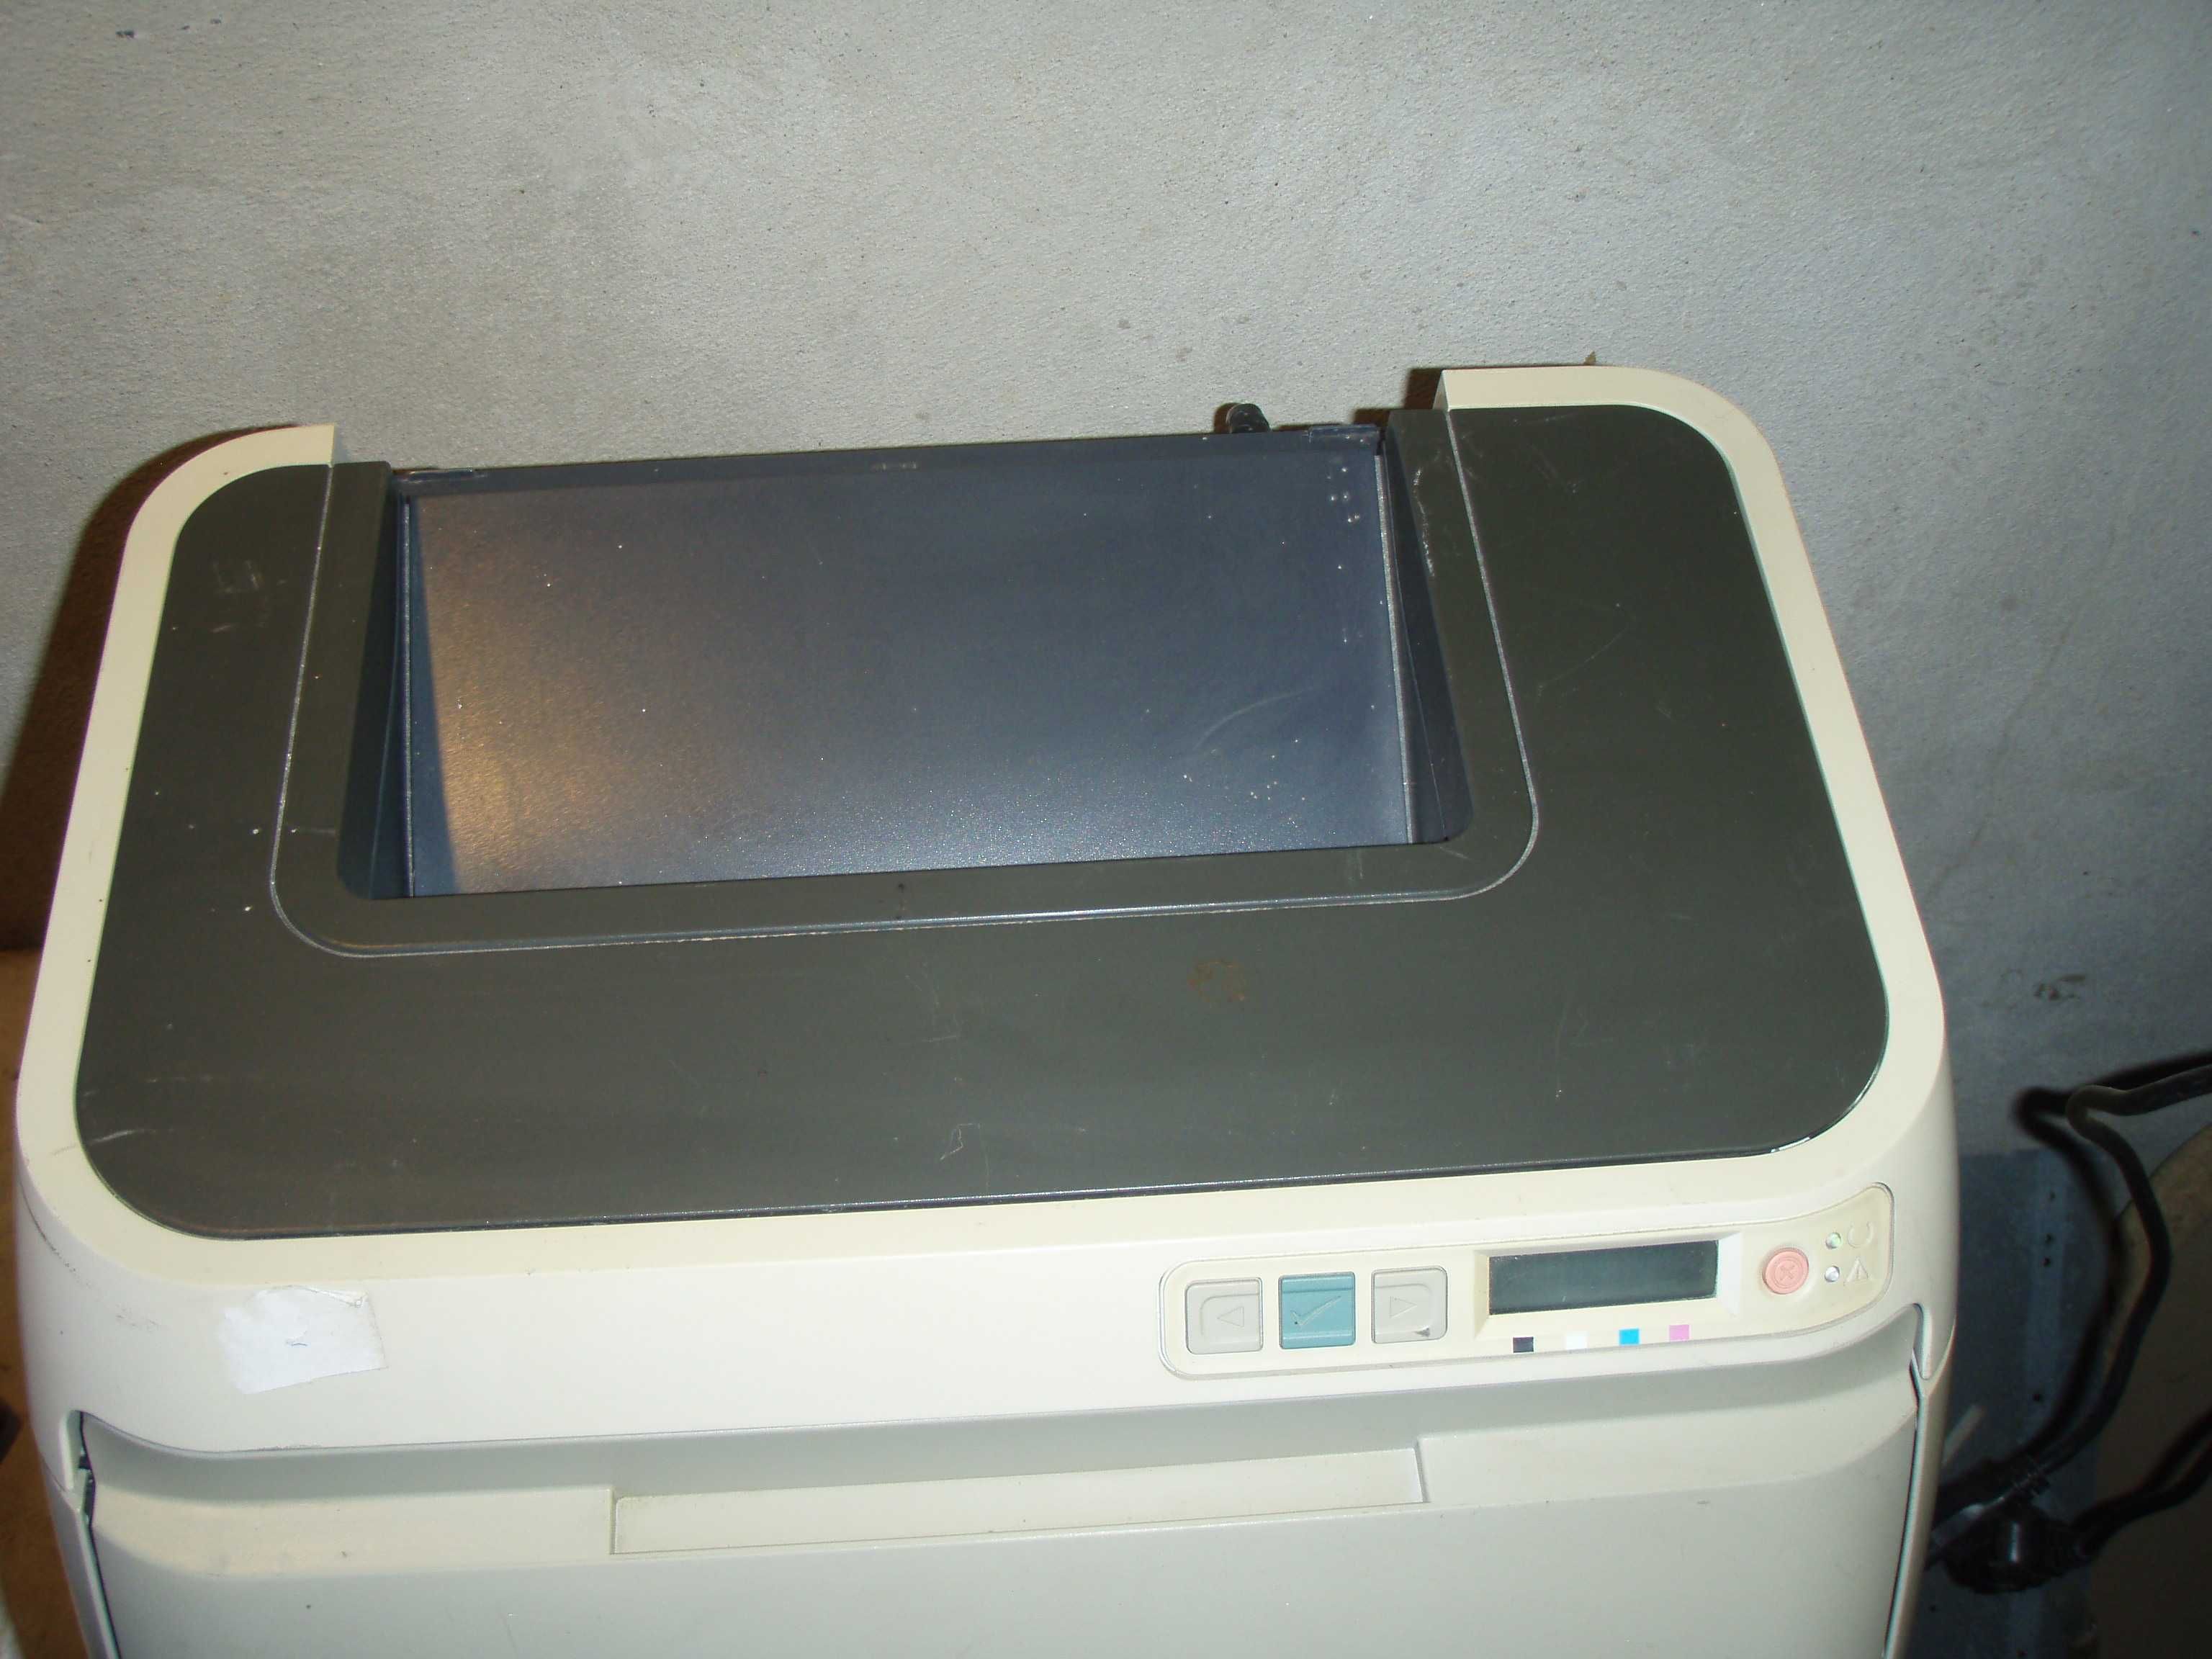 Imprimanta laser color cu placa de retea HP 2600n, murdareste foaia